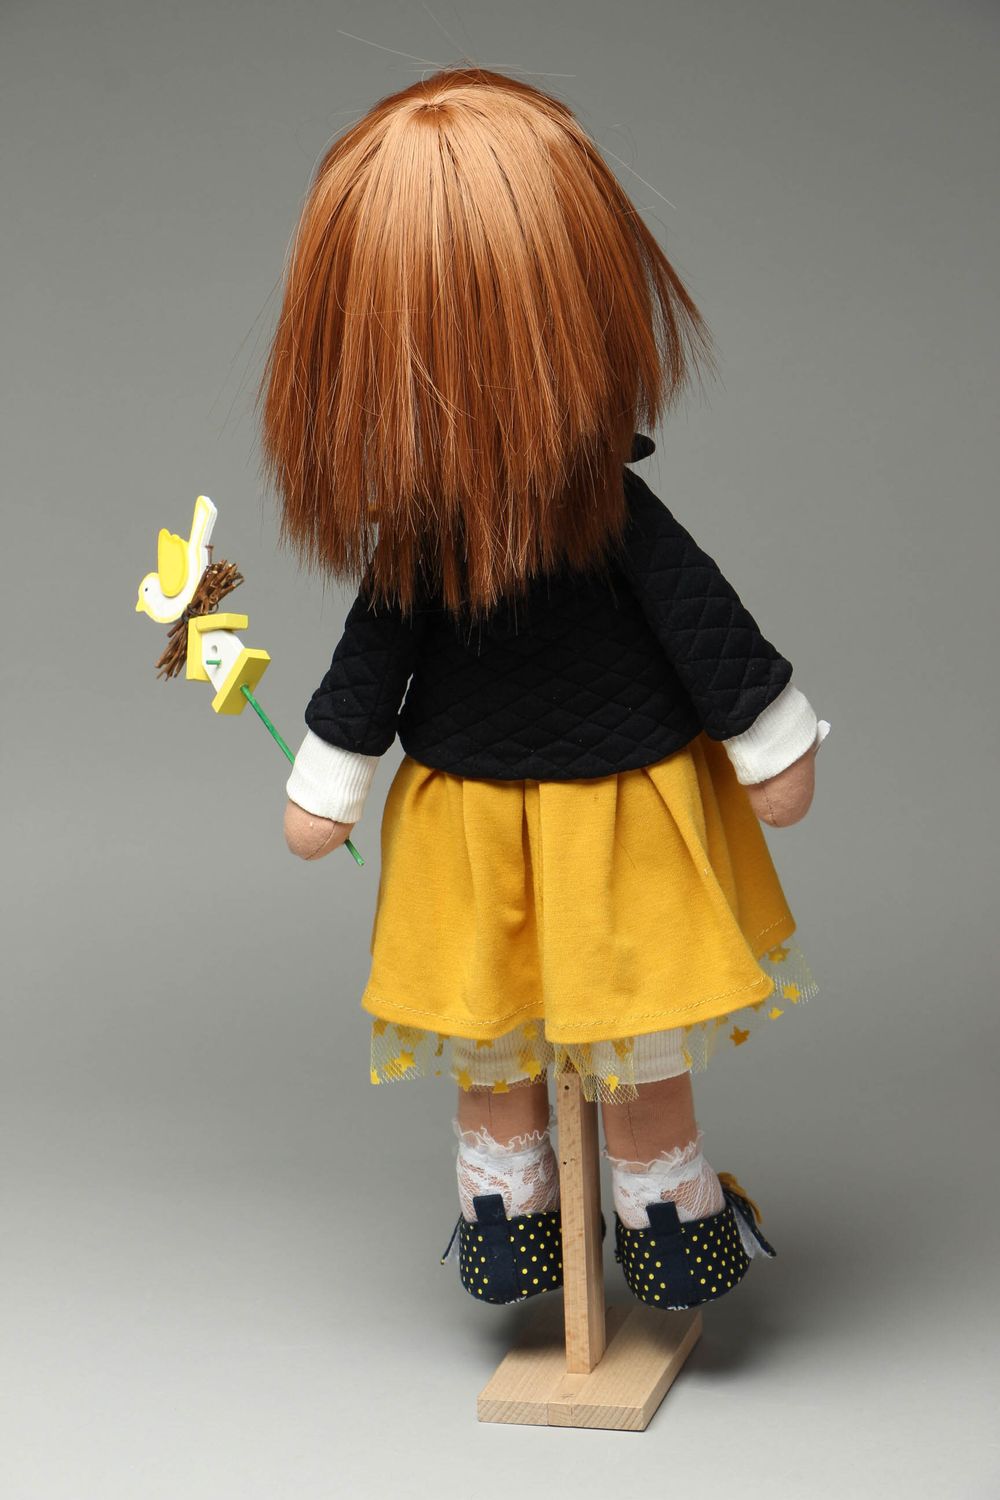 Авторская кукла из тканей на подставке фото 3